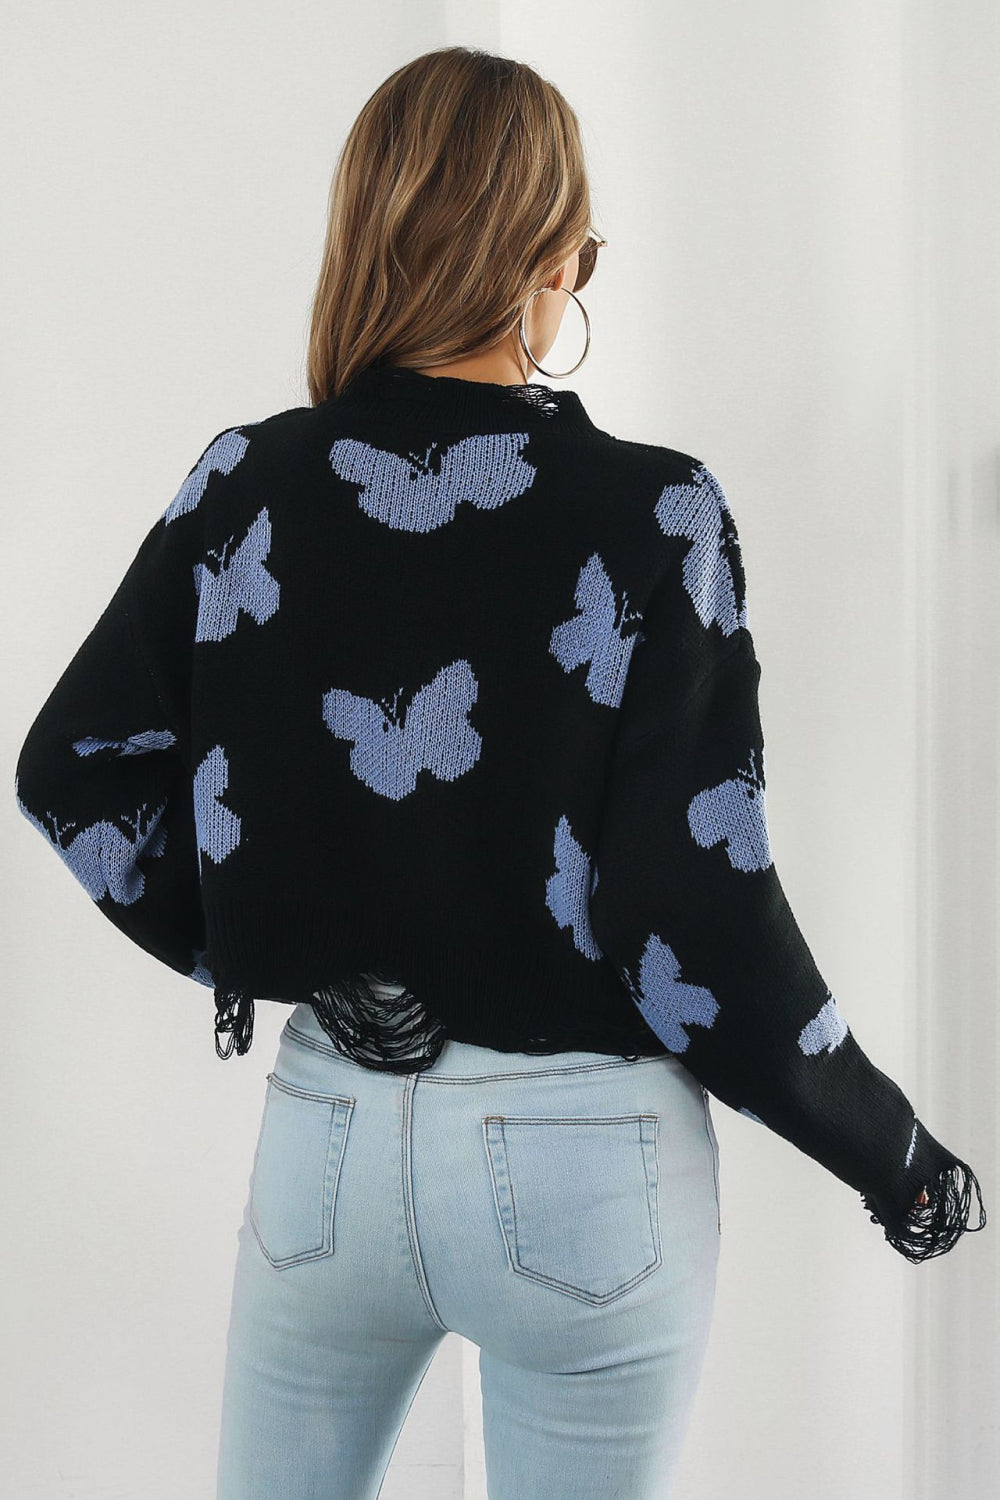 Roam Free Butterfly Sweater